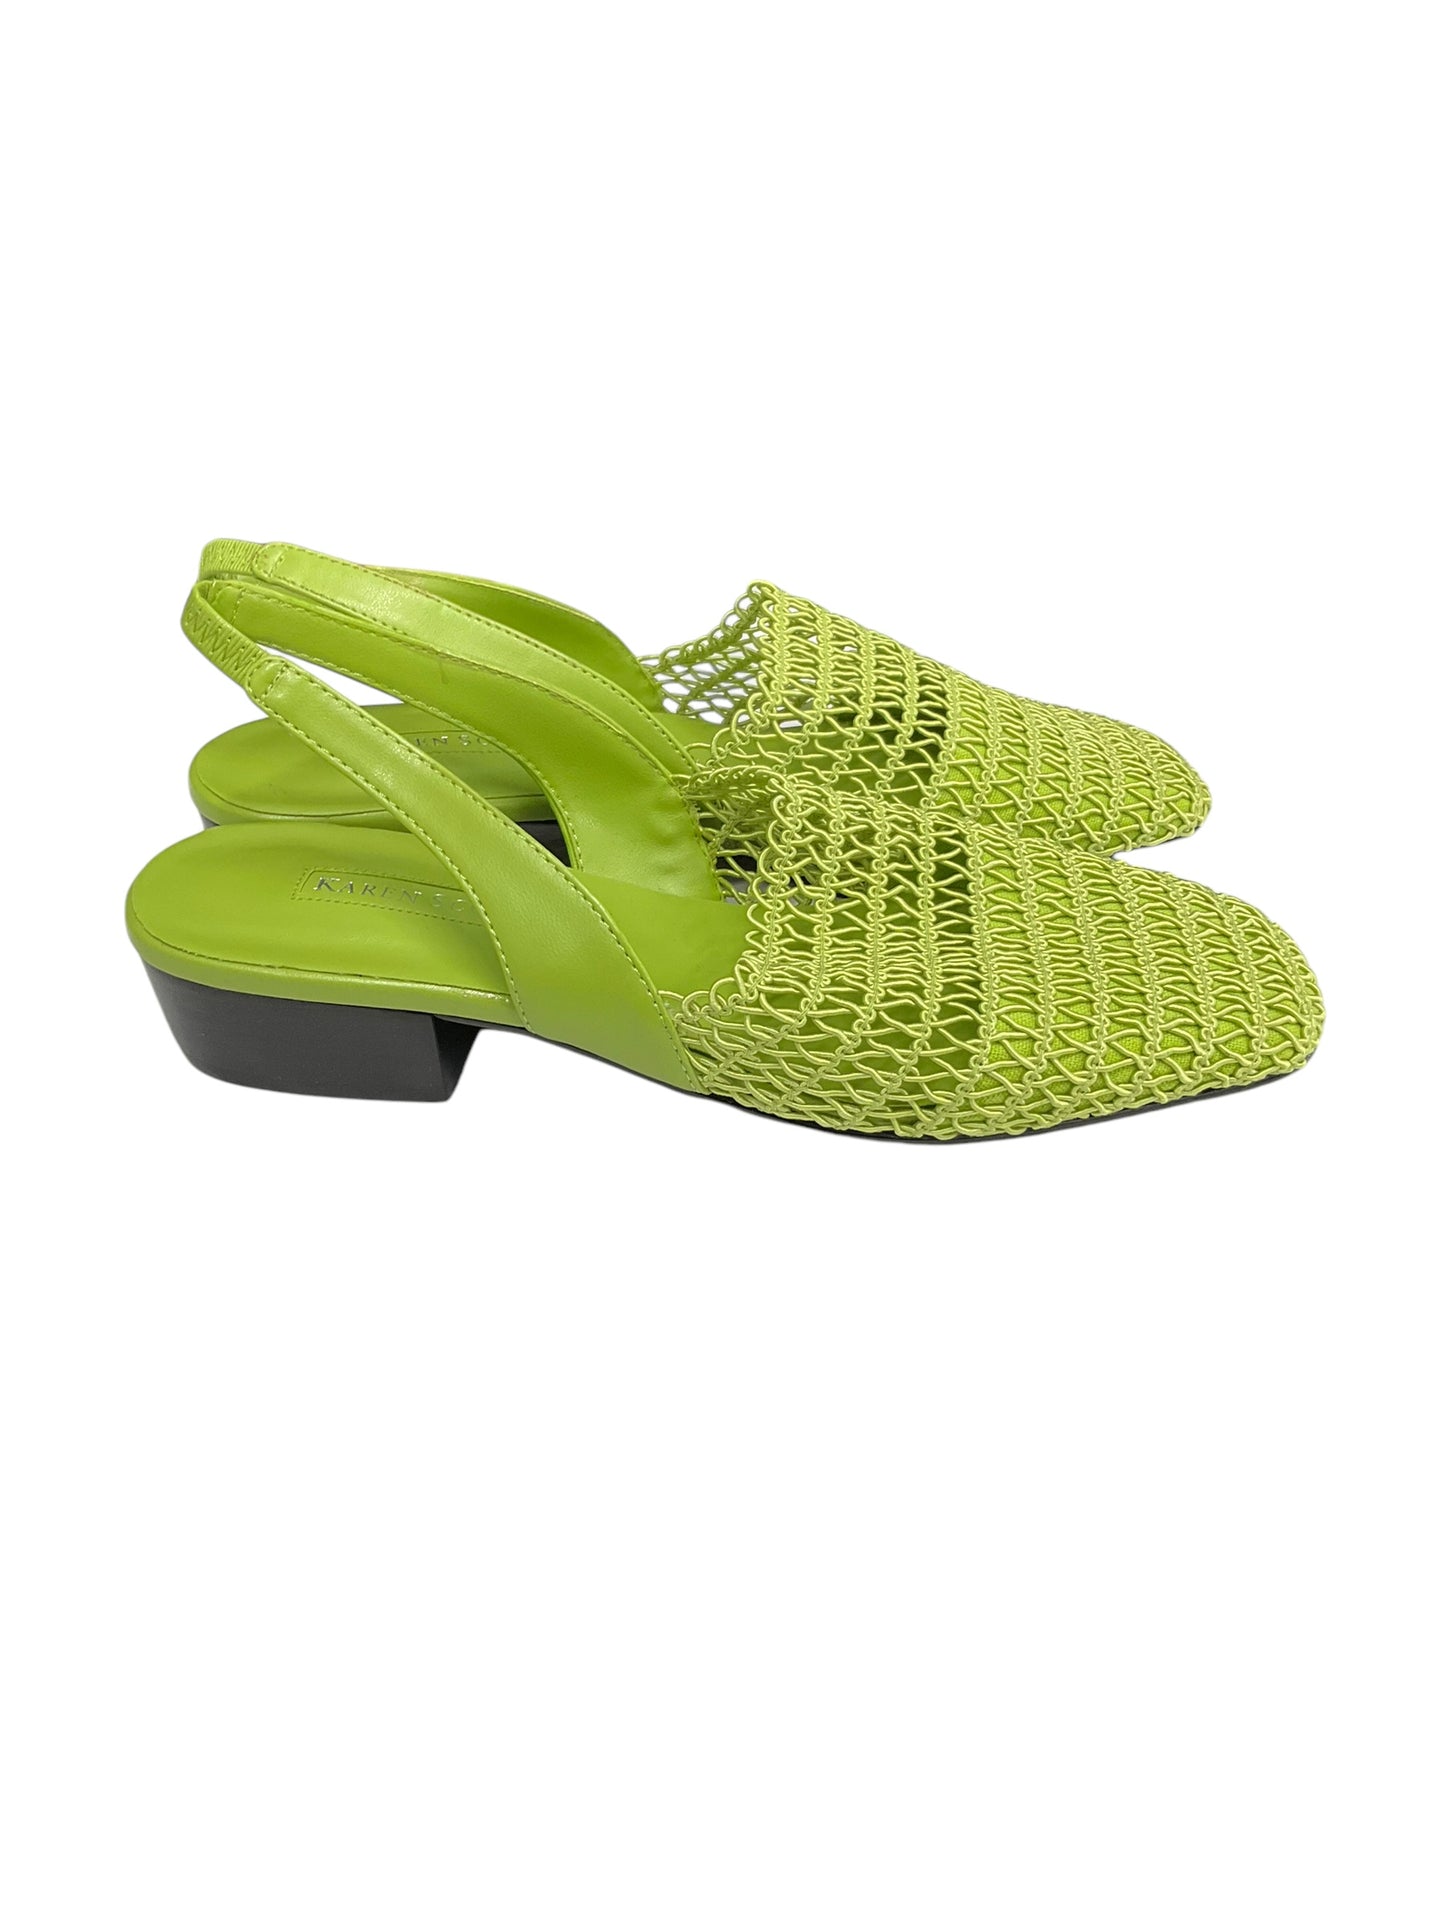 Sandals Heels Block By Karen Scott  Size: 7.5